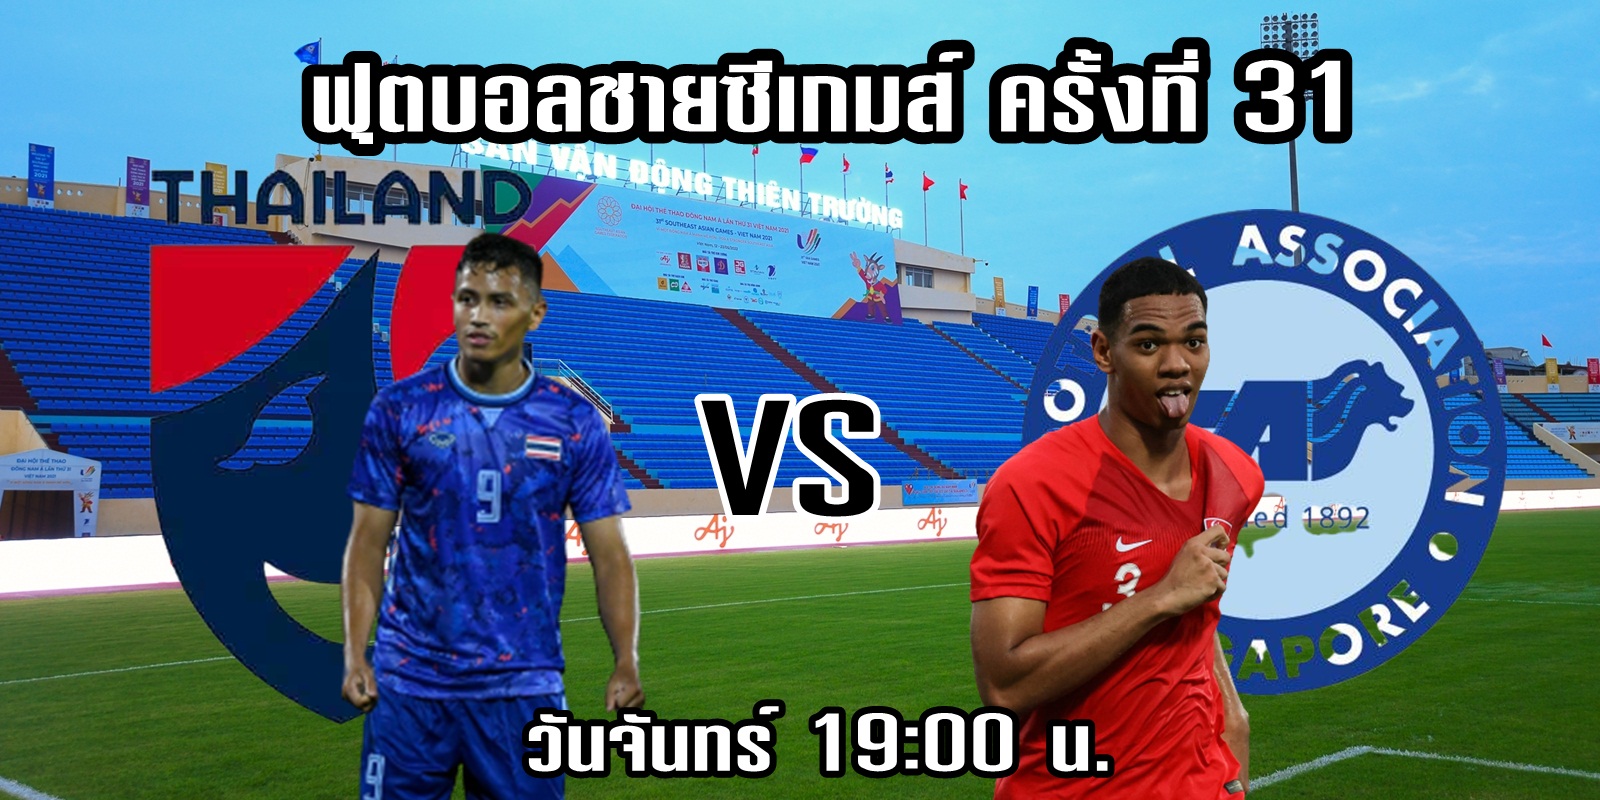 ทีมชาติไทย VS ทีมชาติสิงคโปร์ วิเคราะห์ก่อนเกมฟุตบอลซีเกมส์ วันจันทร์นี้  เวลา